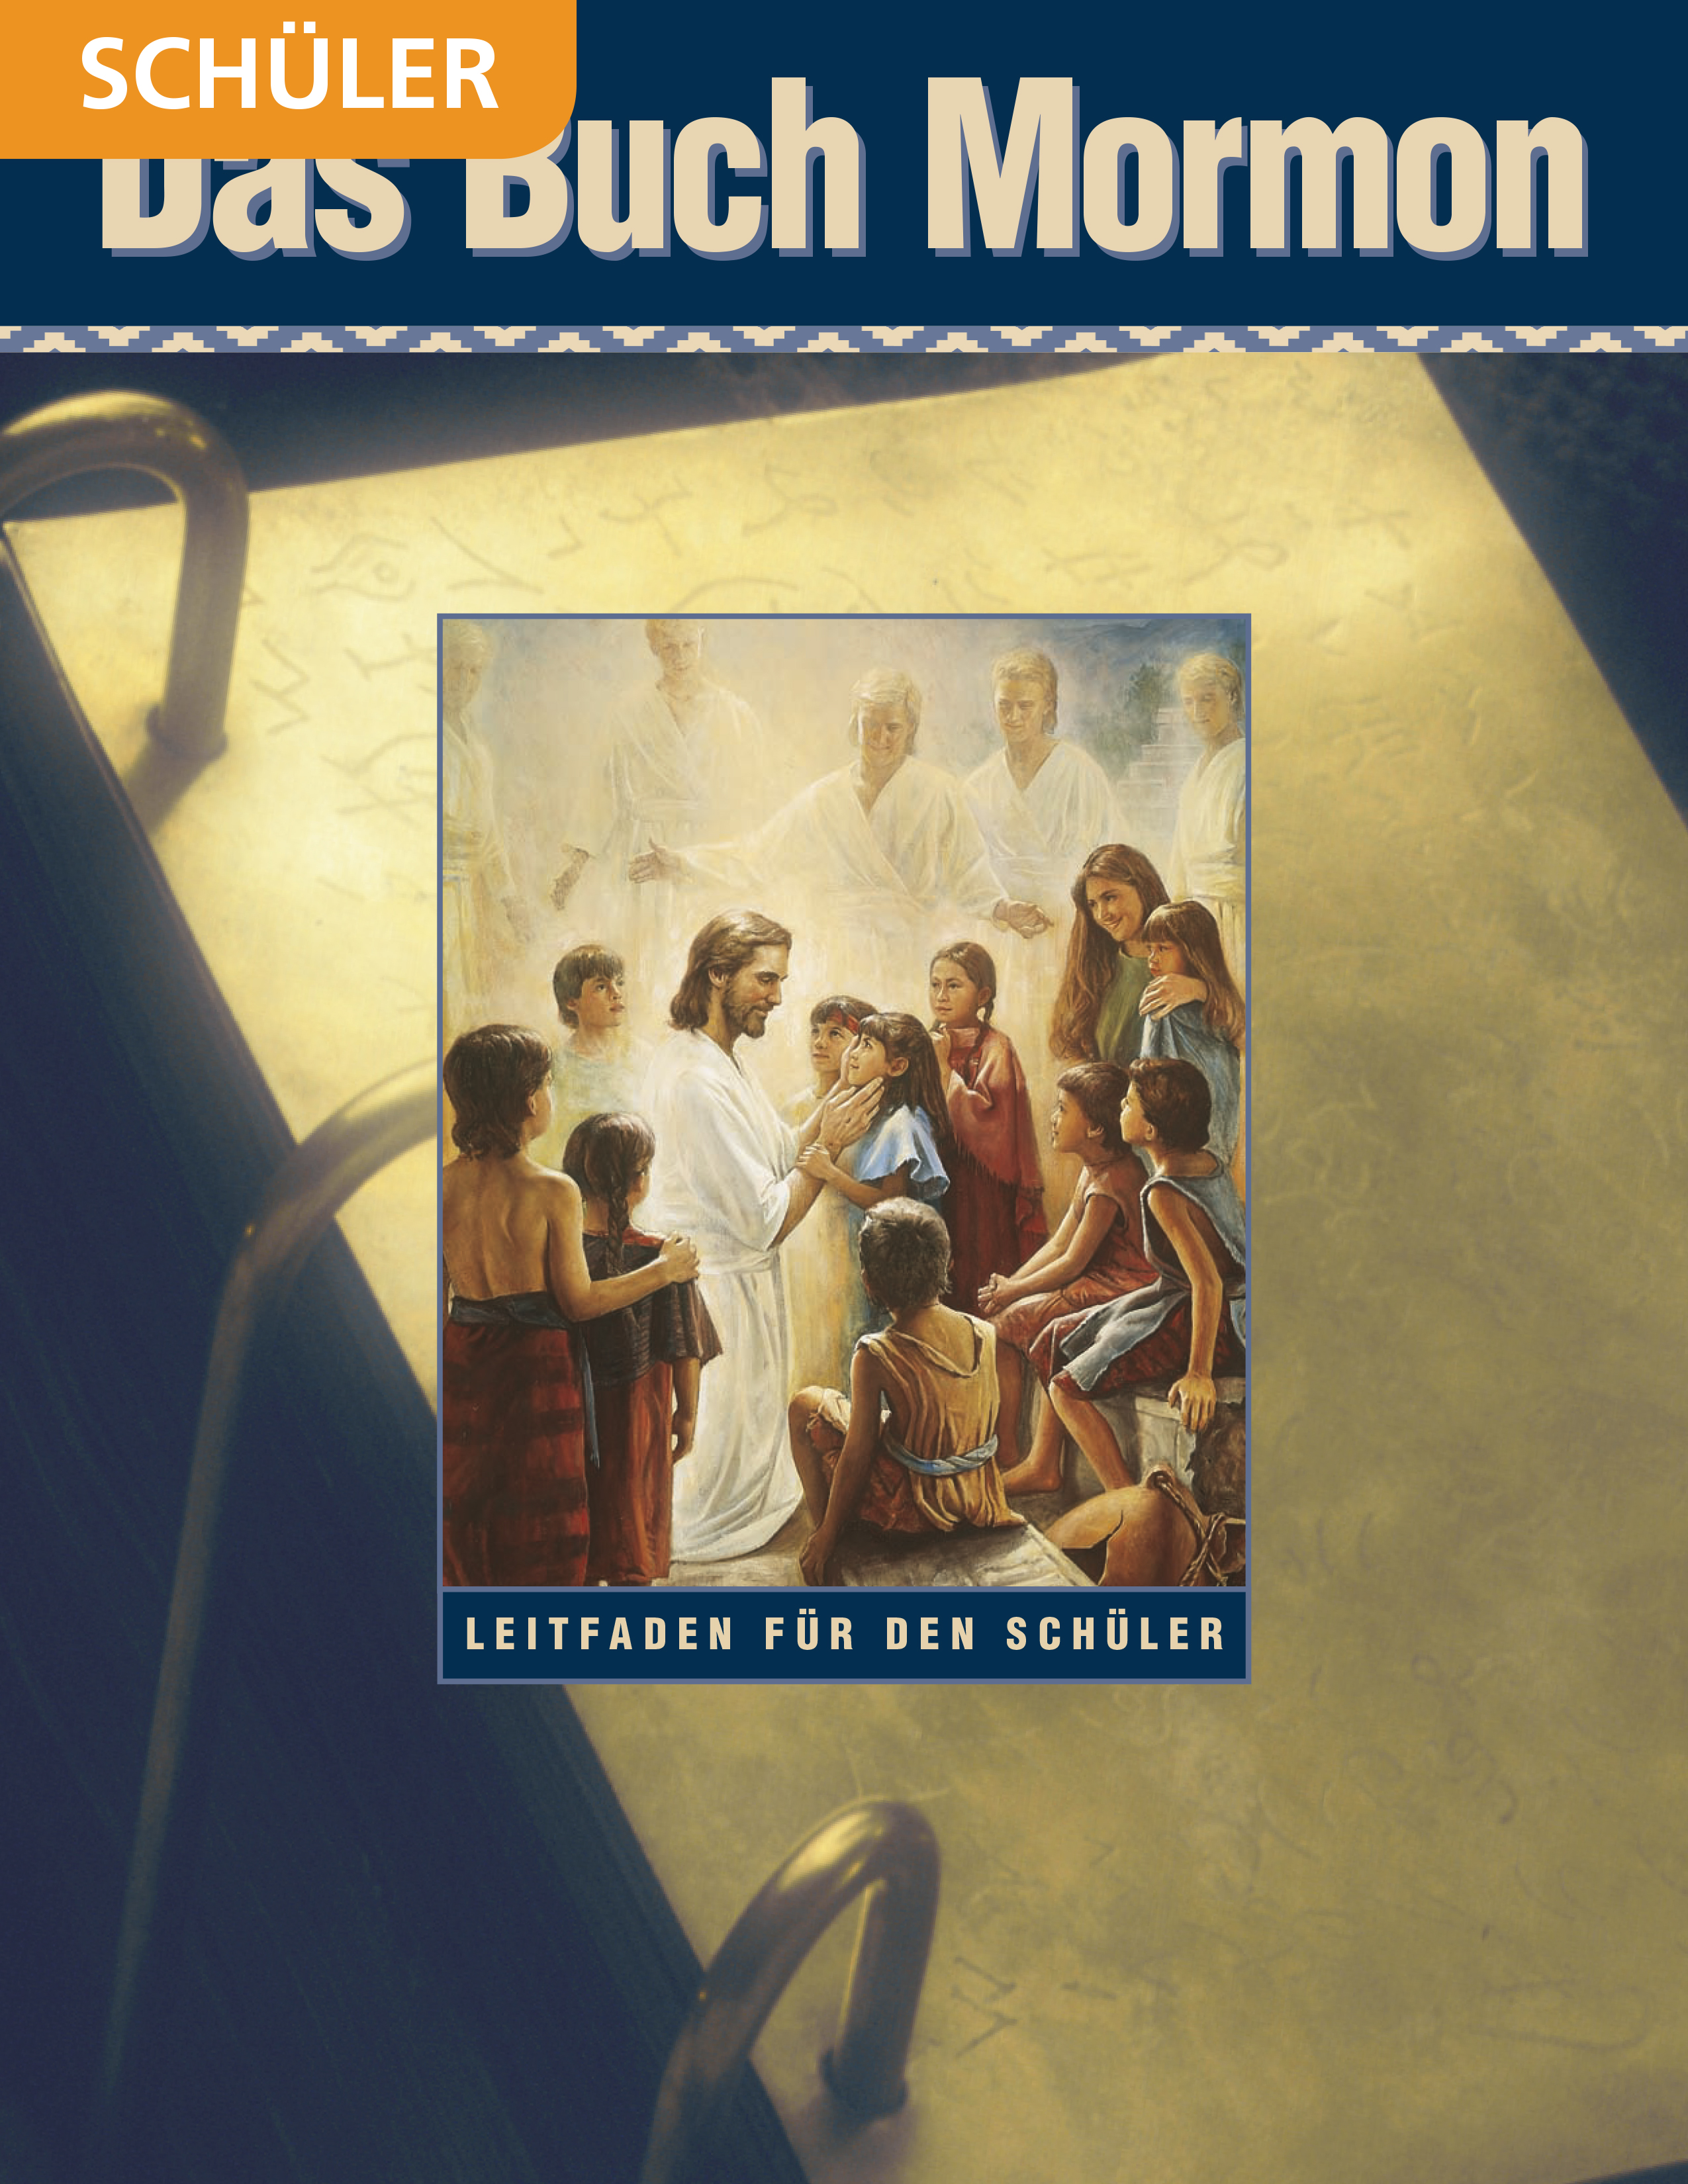 Das Buch Mormon – Schülerleitfaden für das Seminar